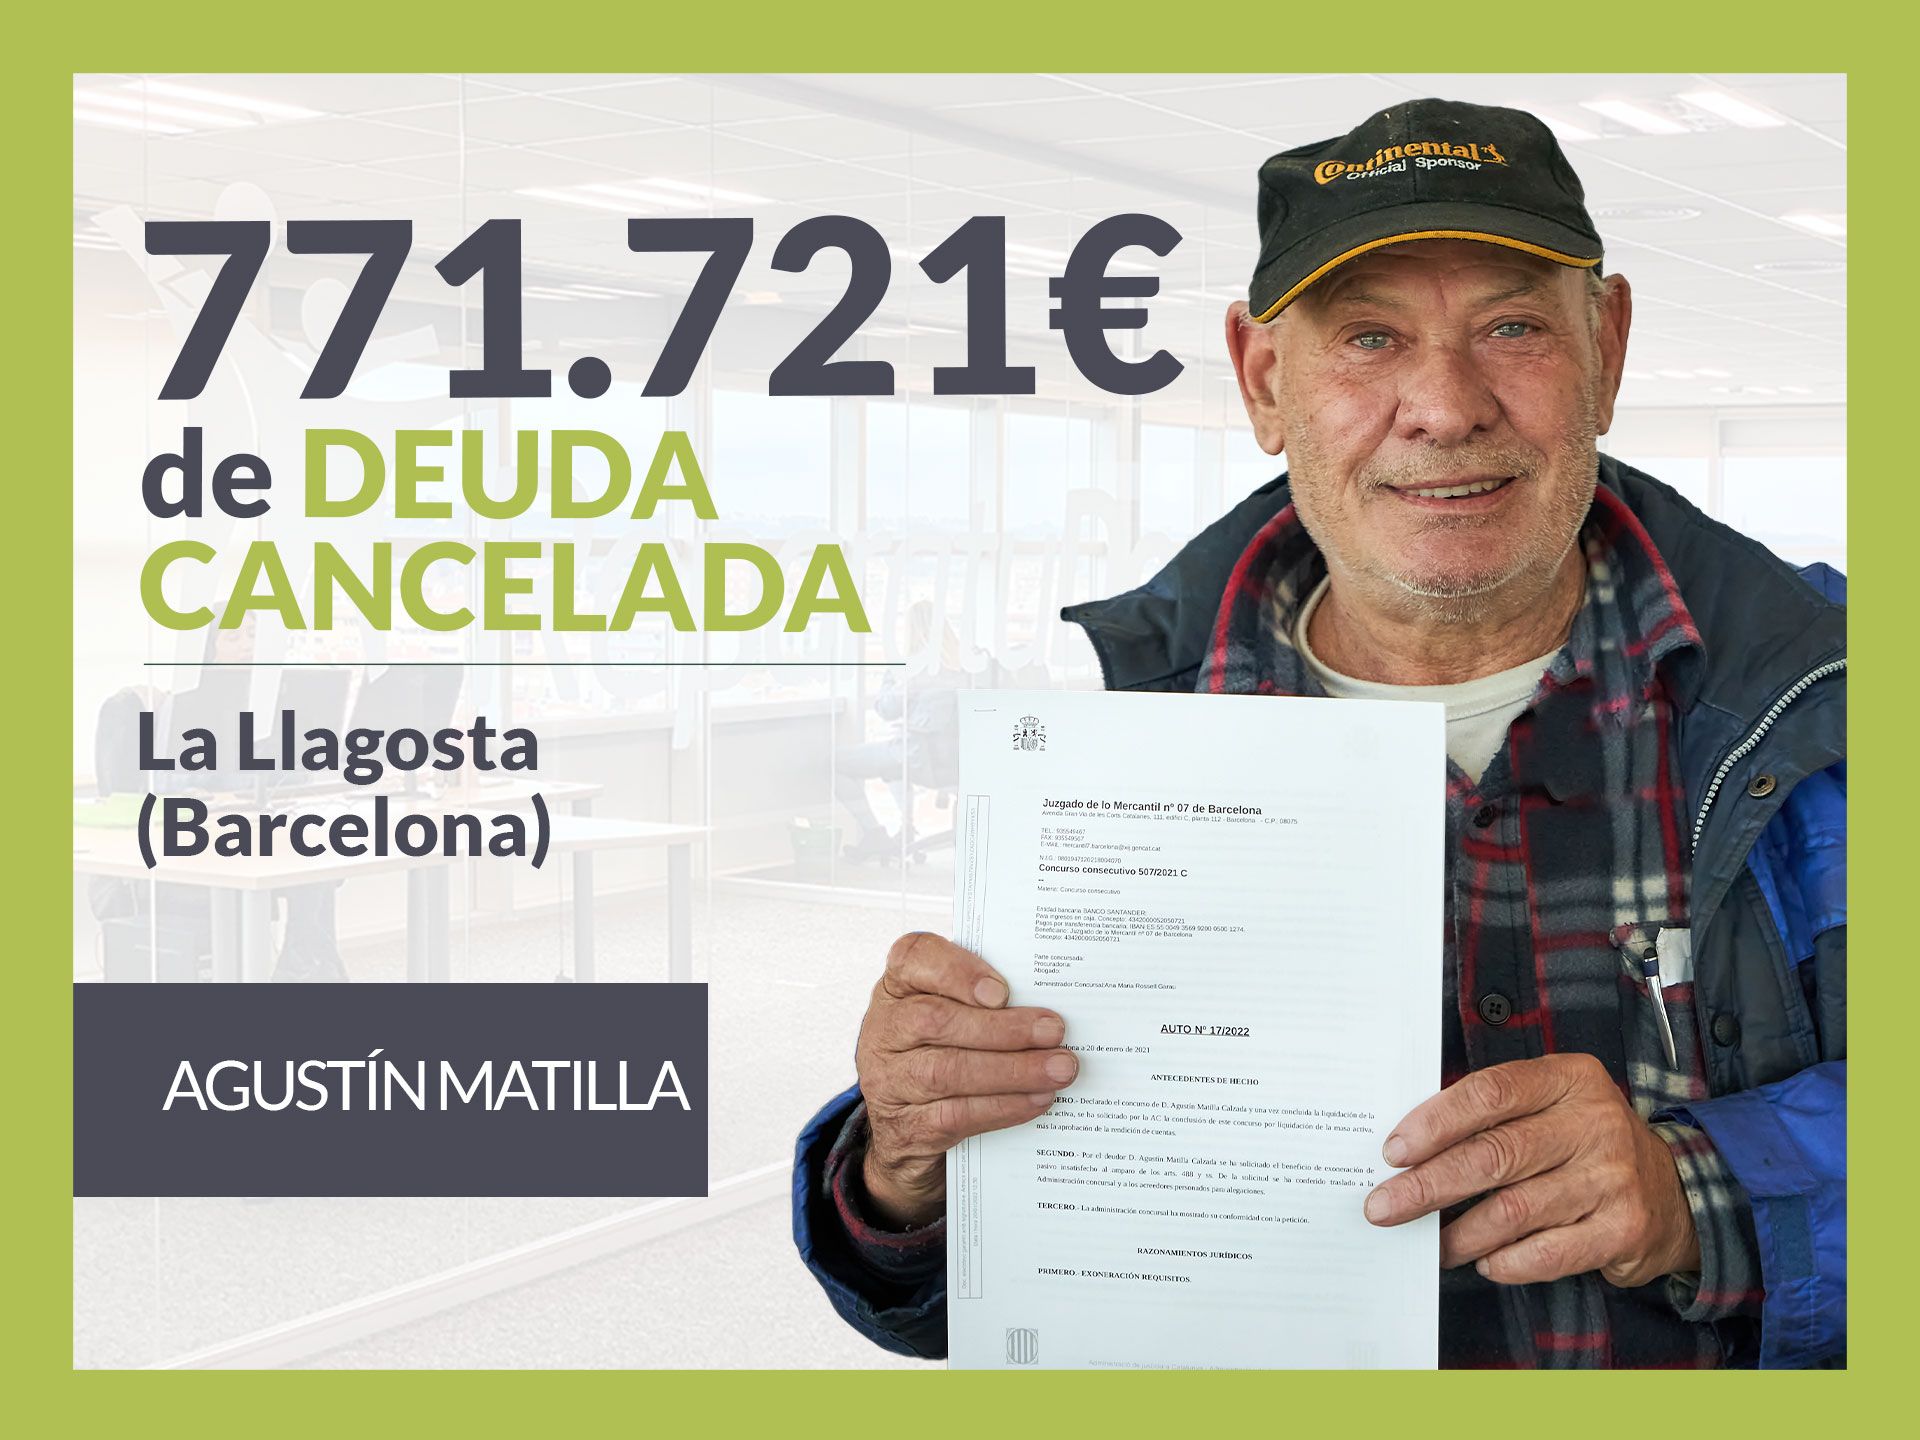 Repara tu Deuda Abogados cancela 771.721 ? en Barcelona (Catalunya) con la Ley de Segunda Oportunidad